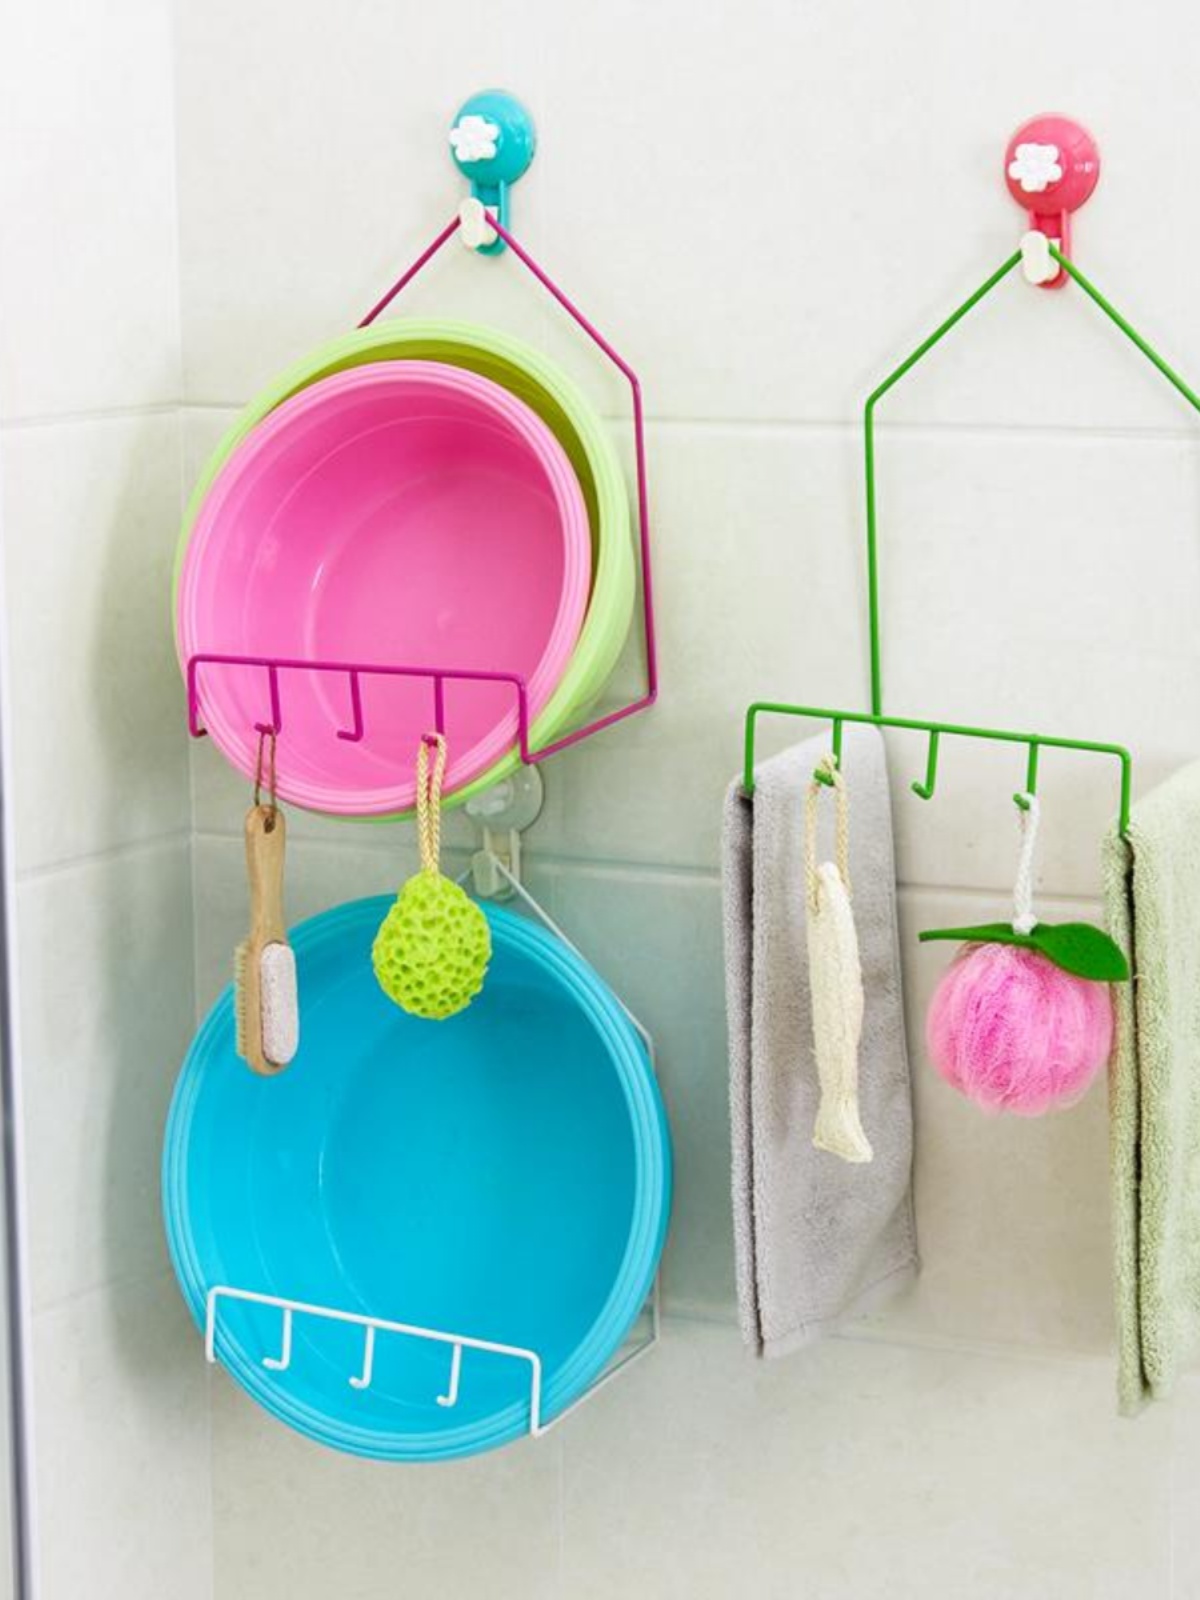 创意家居用品厨房浴室收纳神器实用居家生活日用品百货小商品